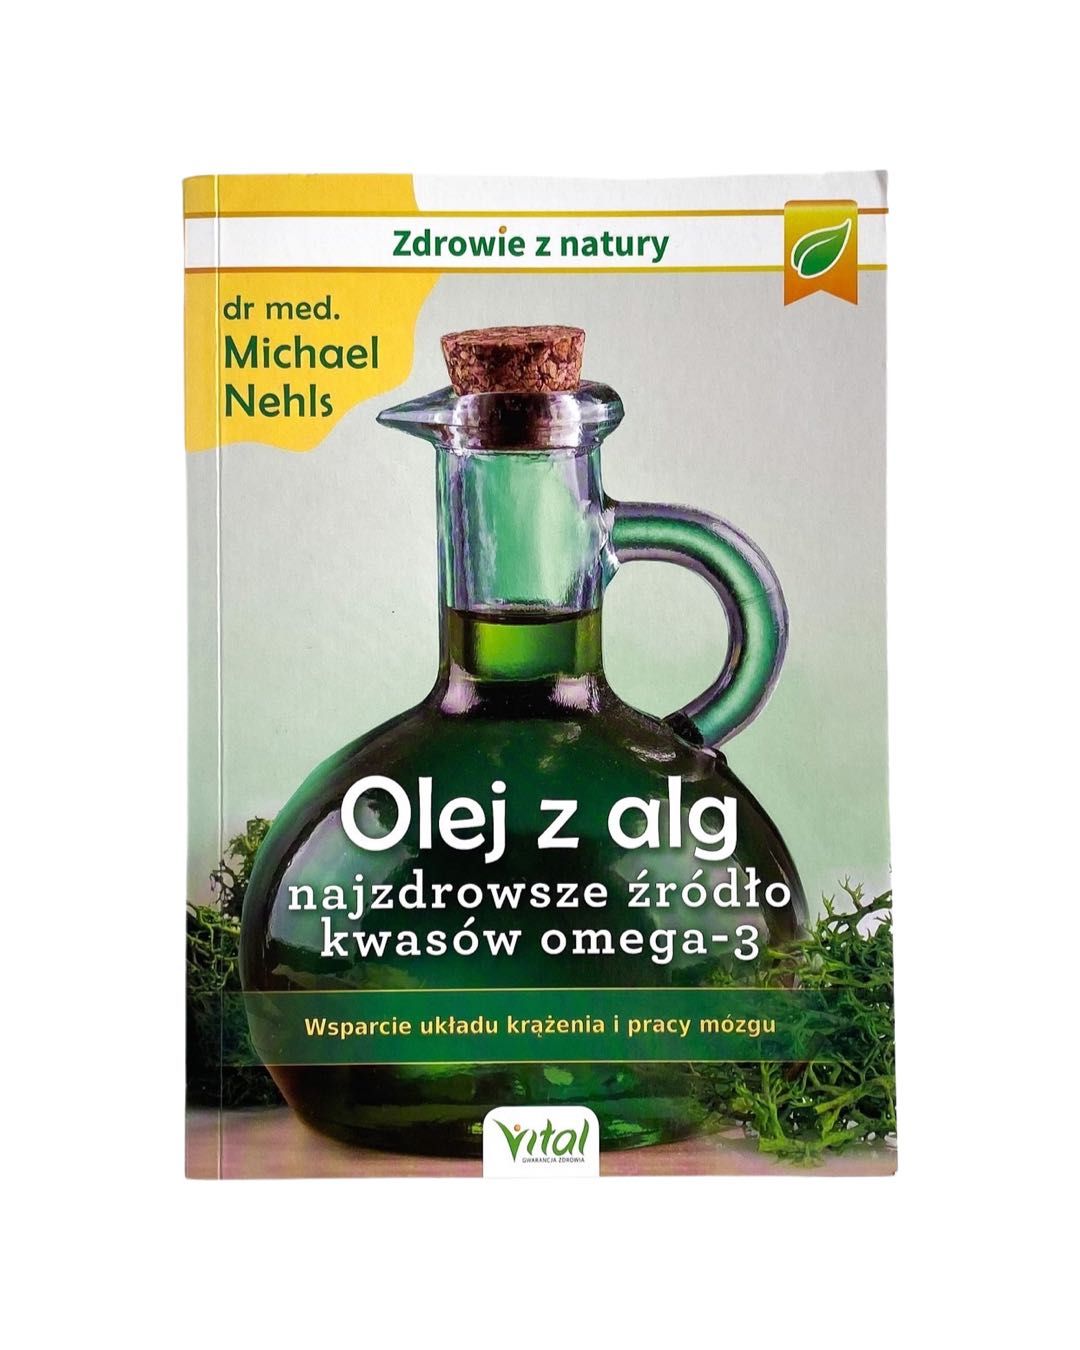 Olej z alg najzdrowsze źródło kwasów omega-3 Michael Nehls NAJTANIEJ